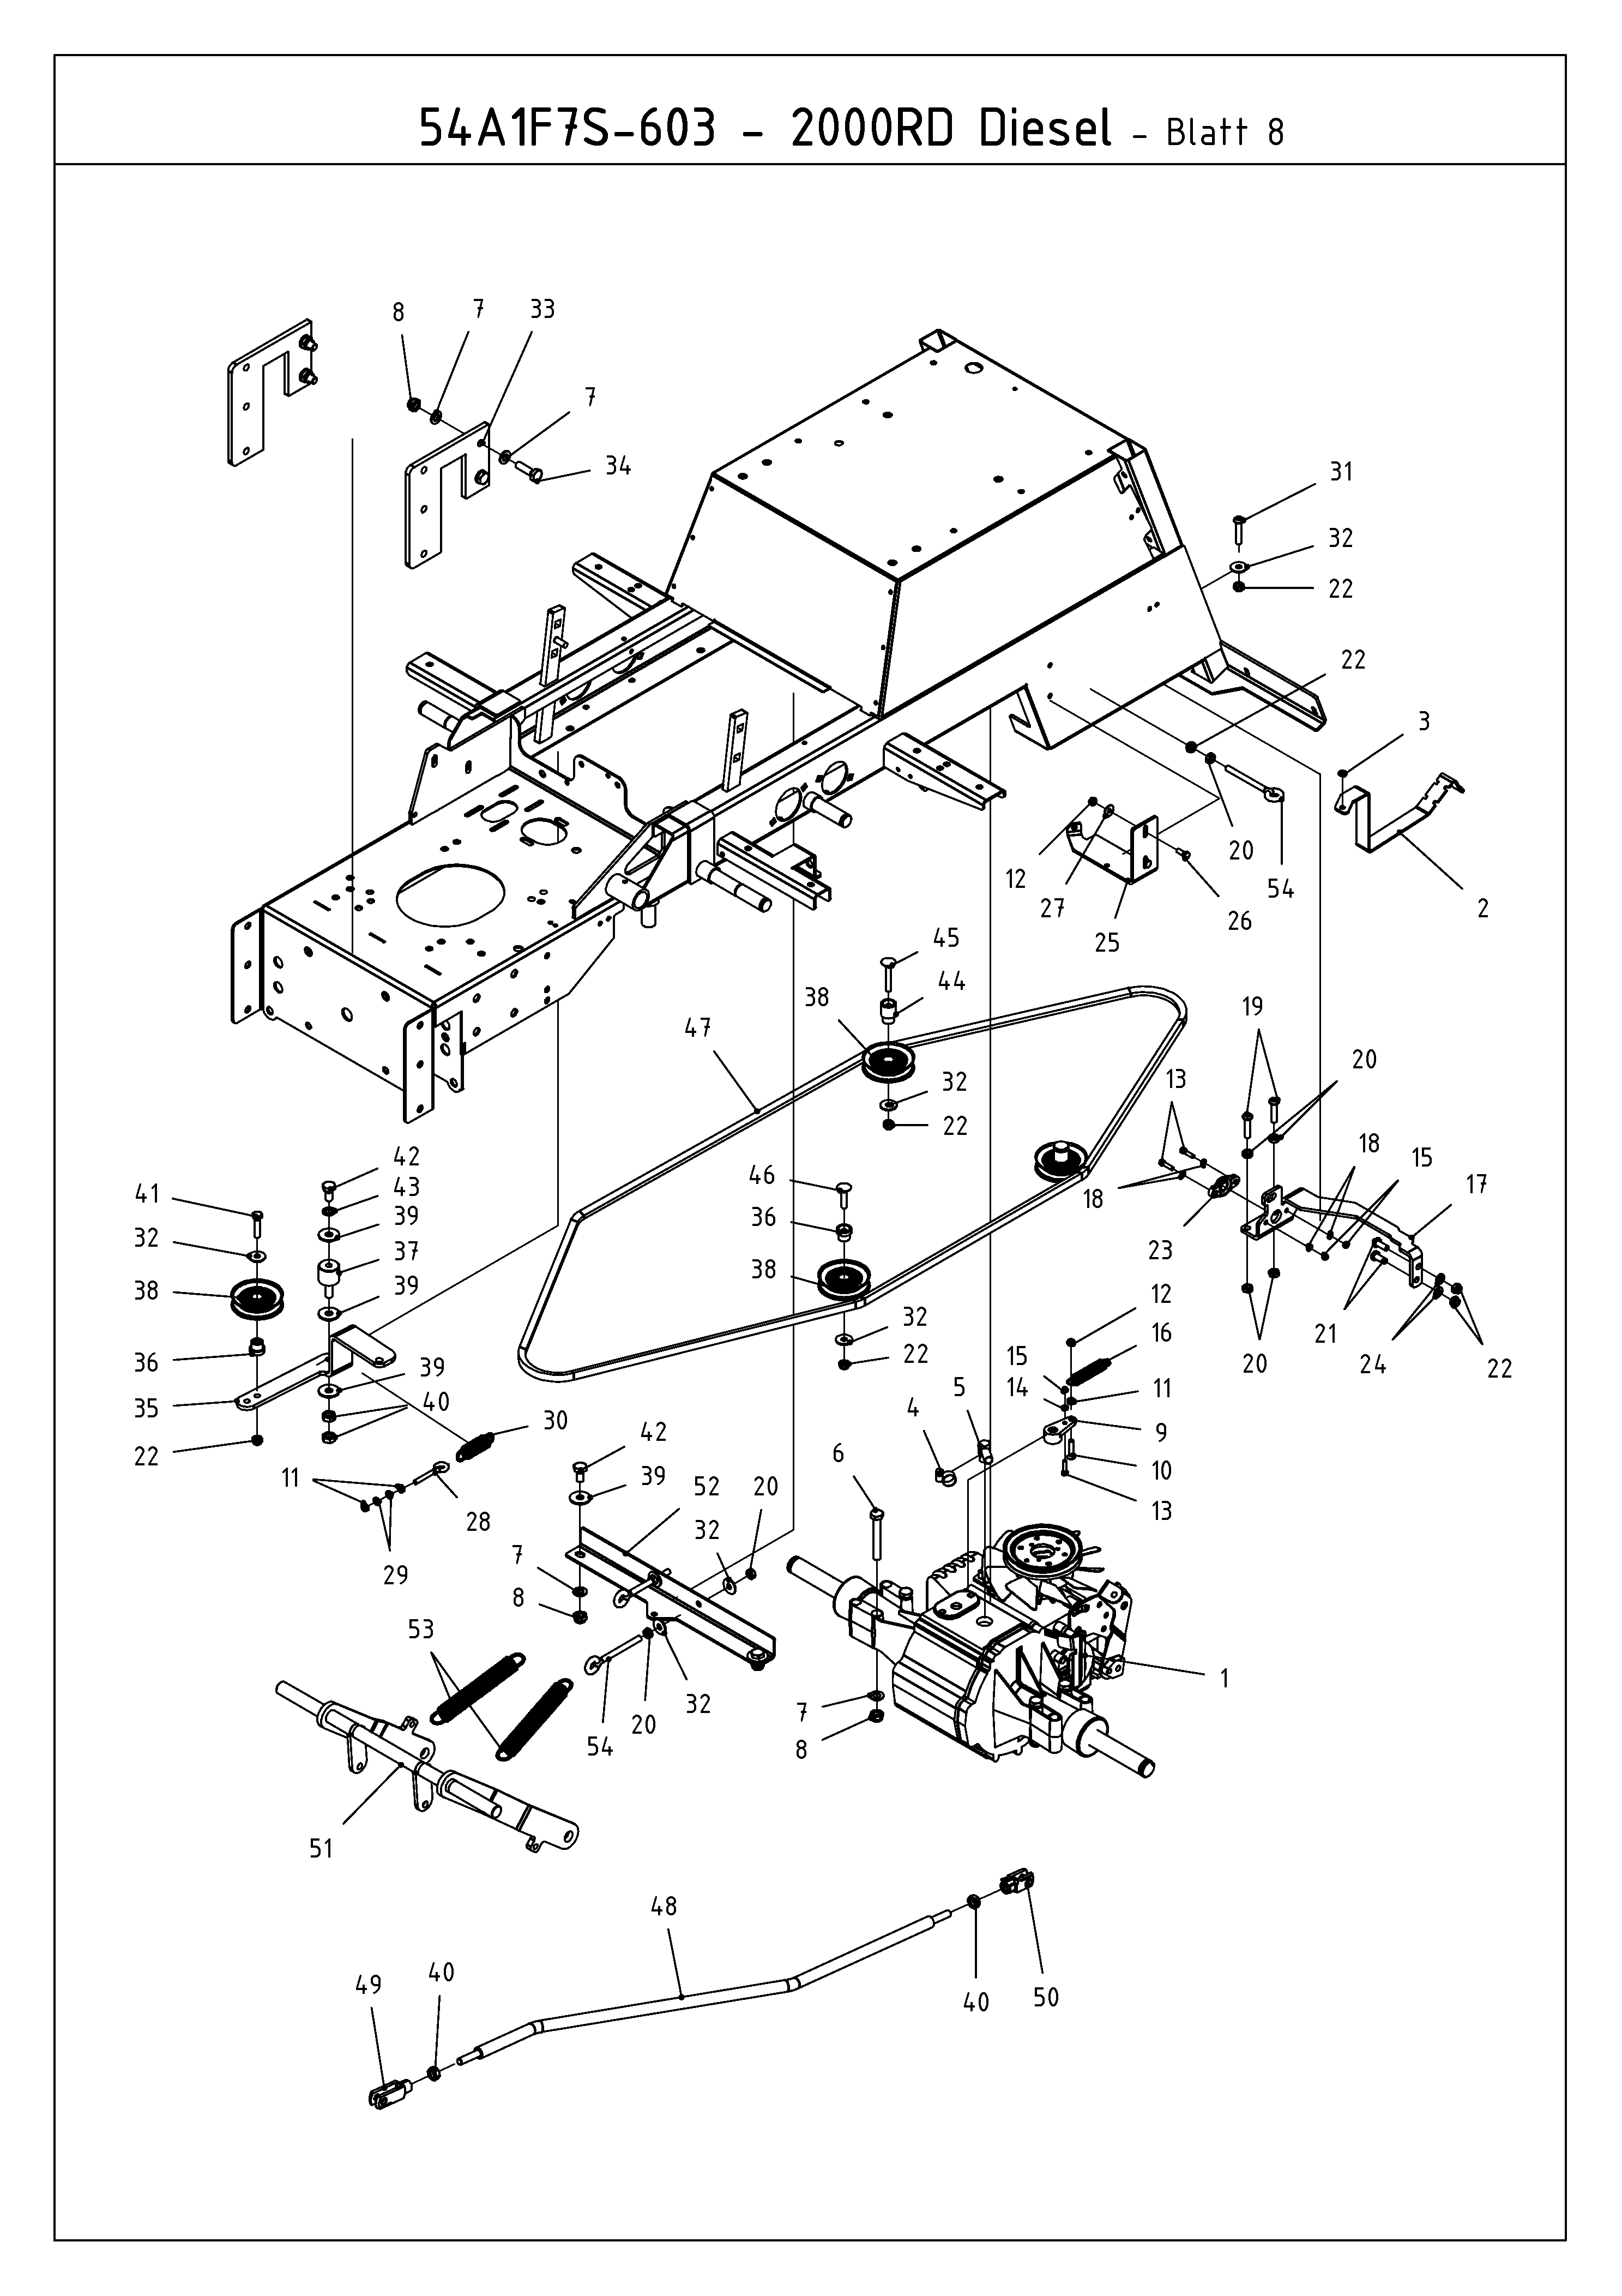 Cub Cadet, Kompakttraktoren, CC 2000 RD, 54A1F7S-603 (2009), Fahrantrieb, Mähwerksaushebung, MTD Ersatzteil-Zeichnungen